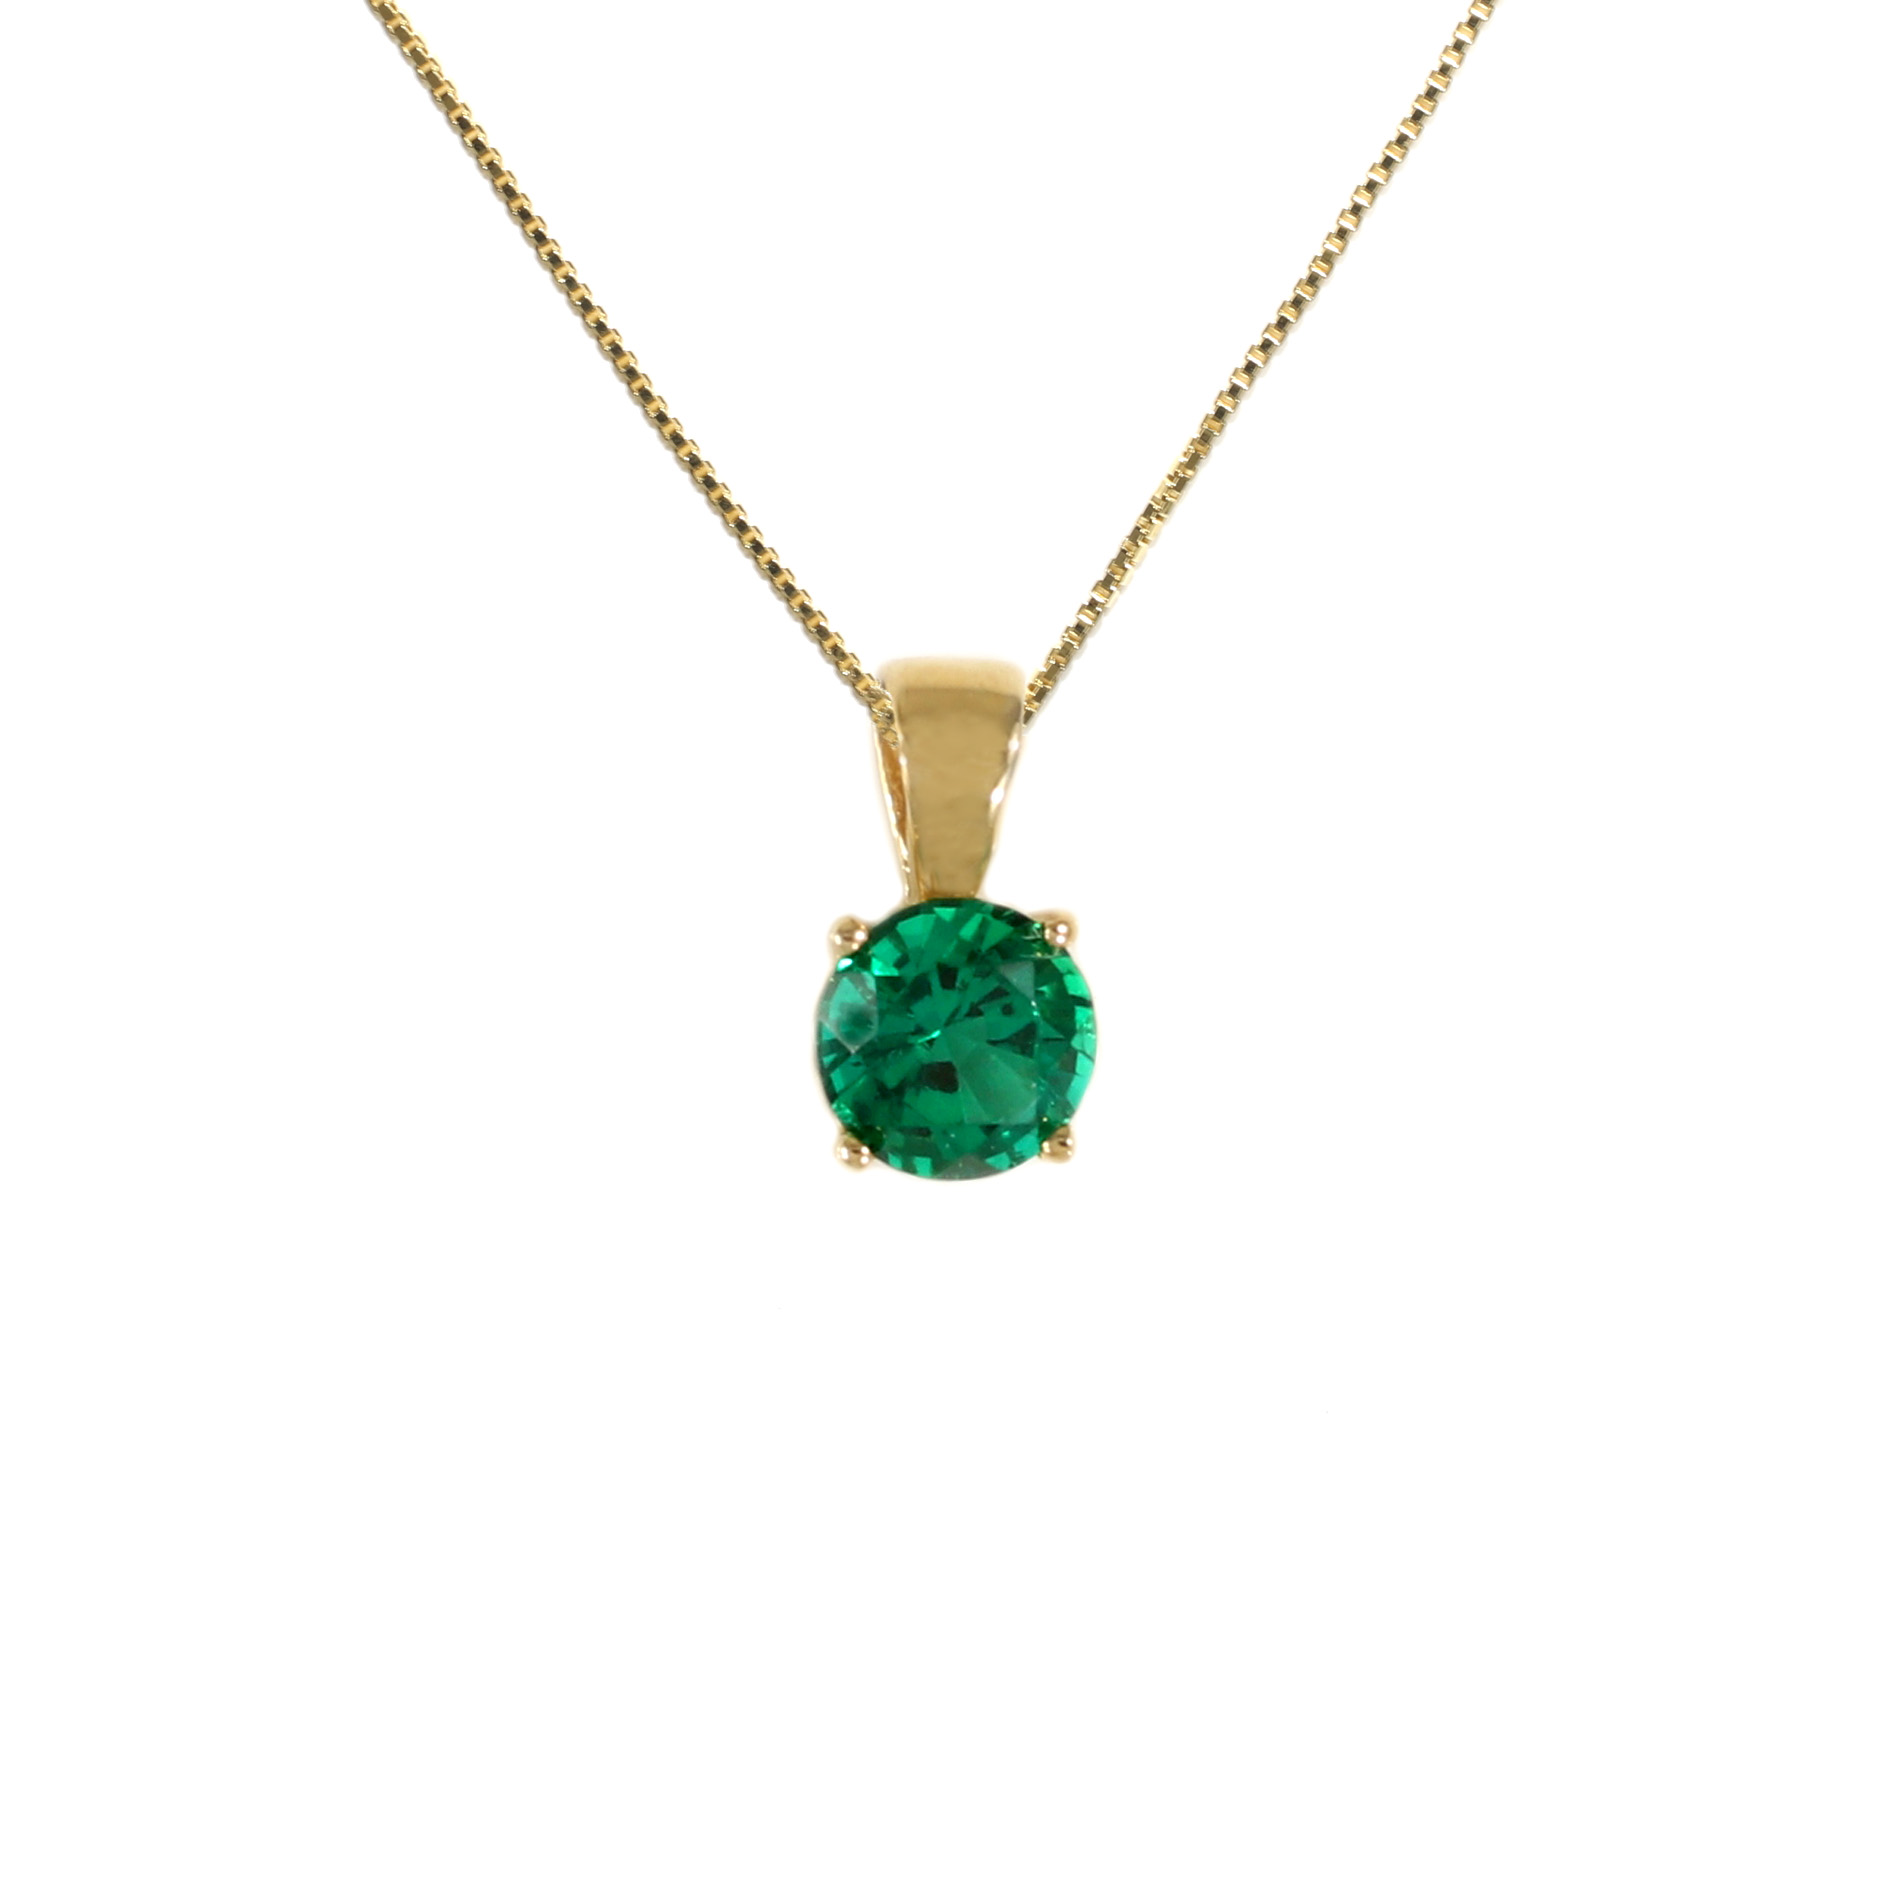 Tamara G Designs | Emerald Solitaire Pendant